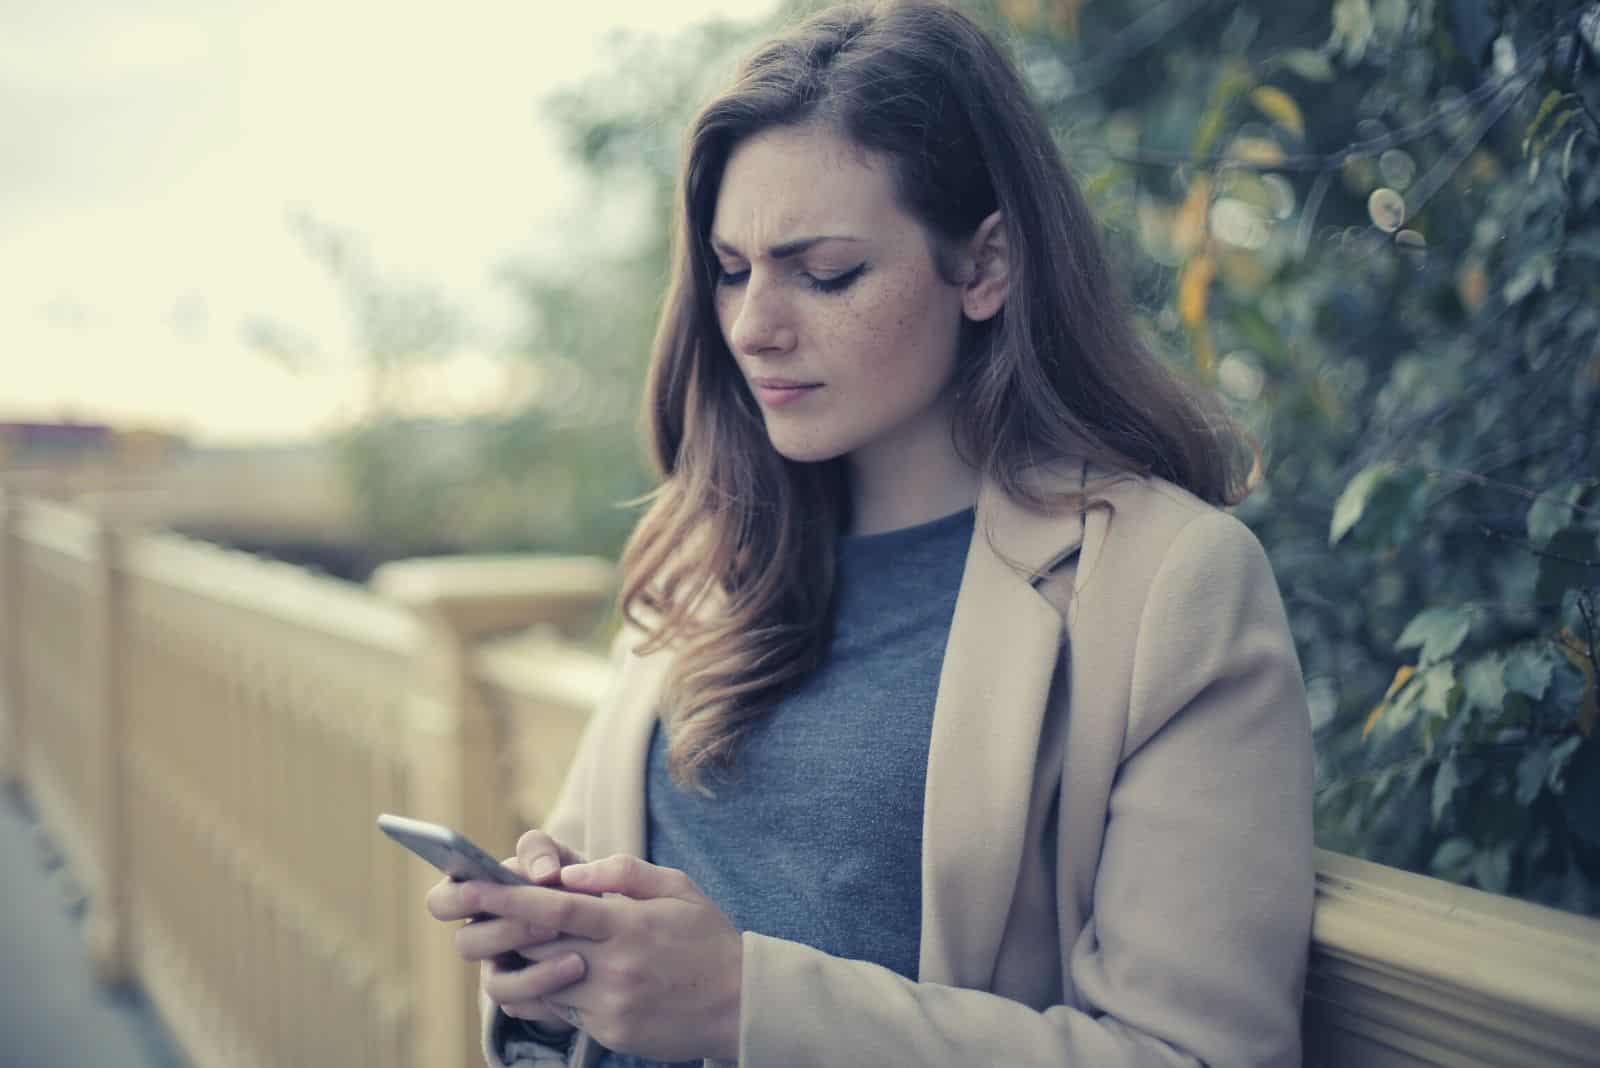 mujer pensativa escribiendo un mensaje en su smartphone al aire libre cerca de una valla